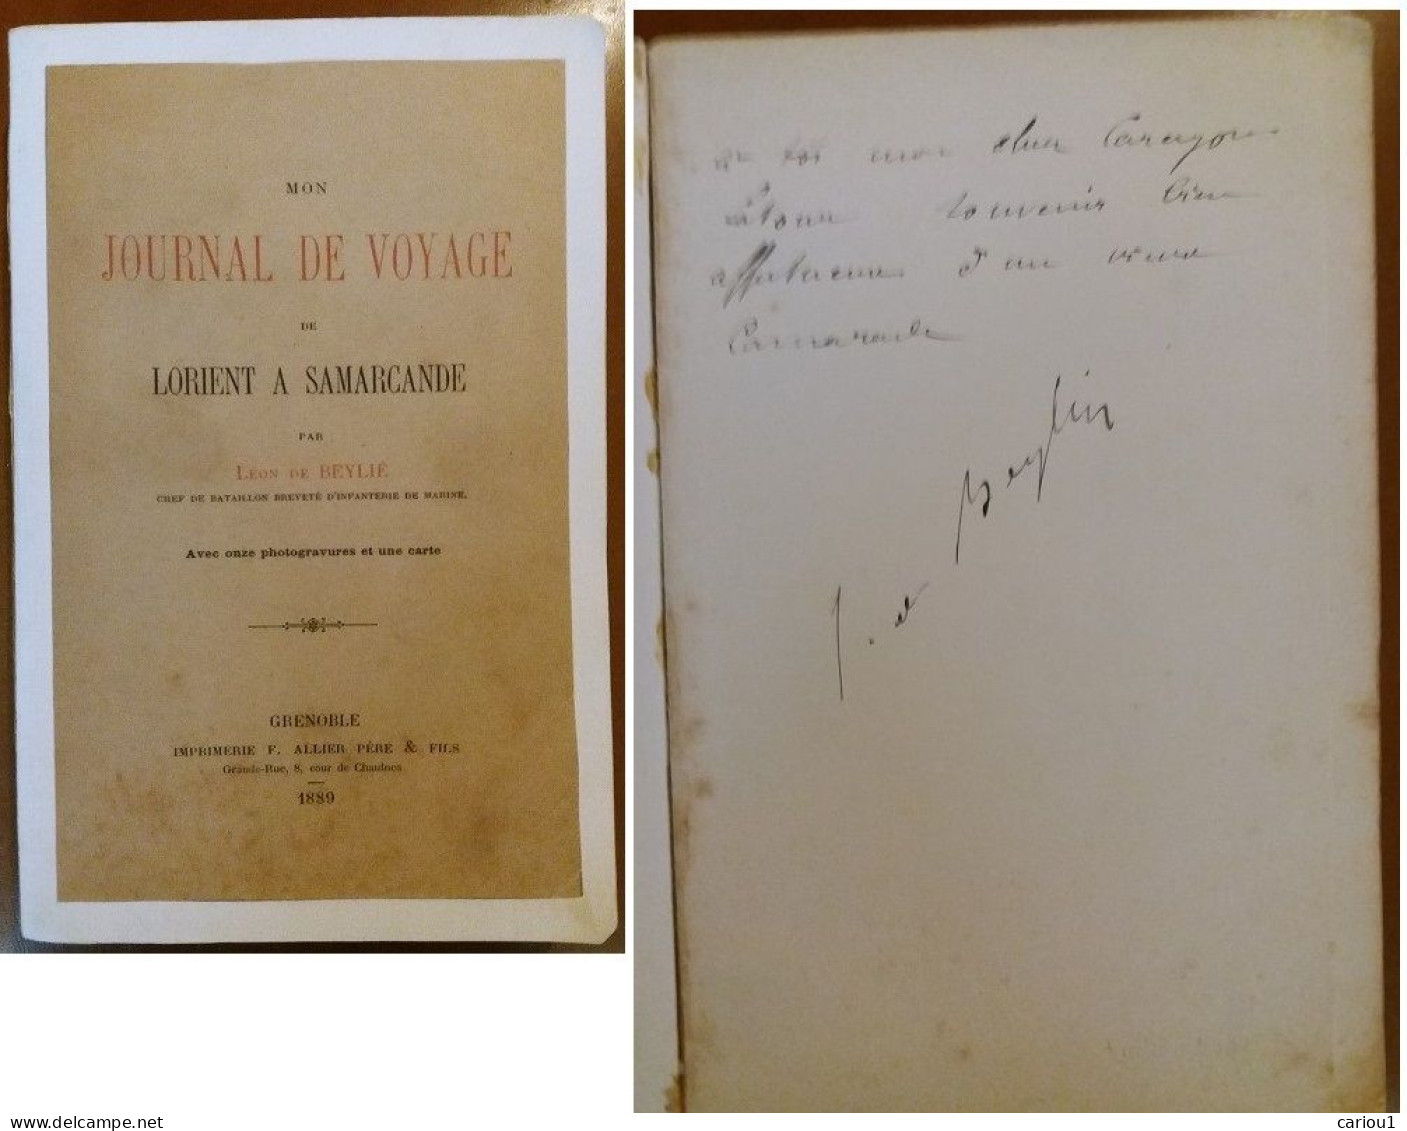 C1 Leon De BEYLIE Voyage LORIENT SAMARCANDE Musee GRENOBLE Signed DEDICACE Envoi Port Inclus France - Livres Dédicacés